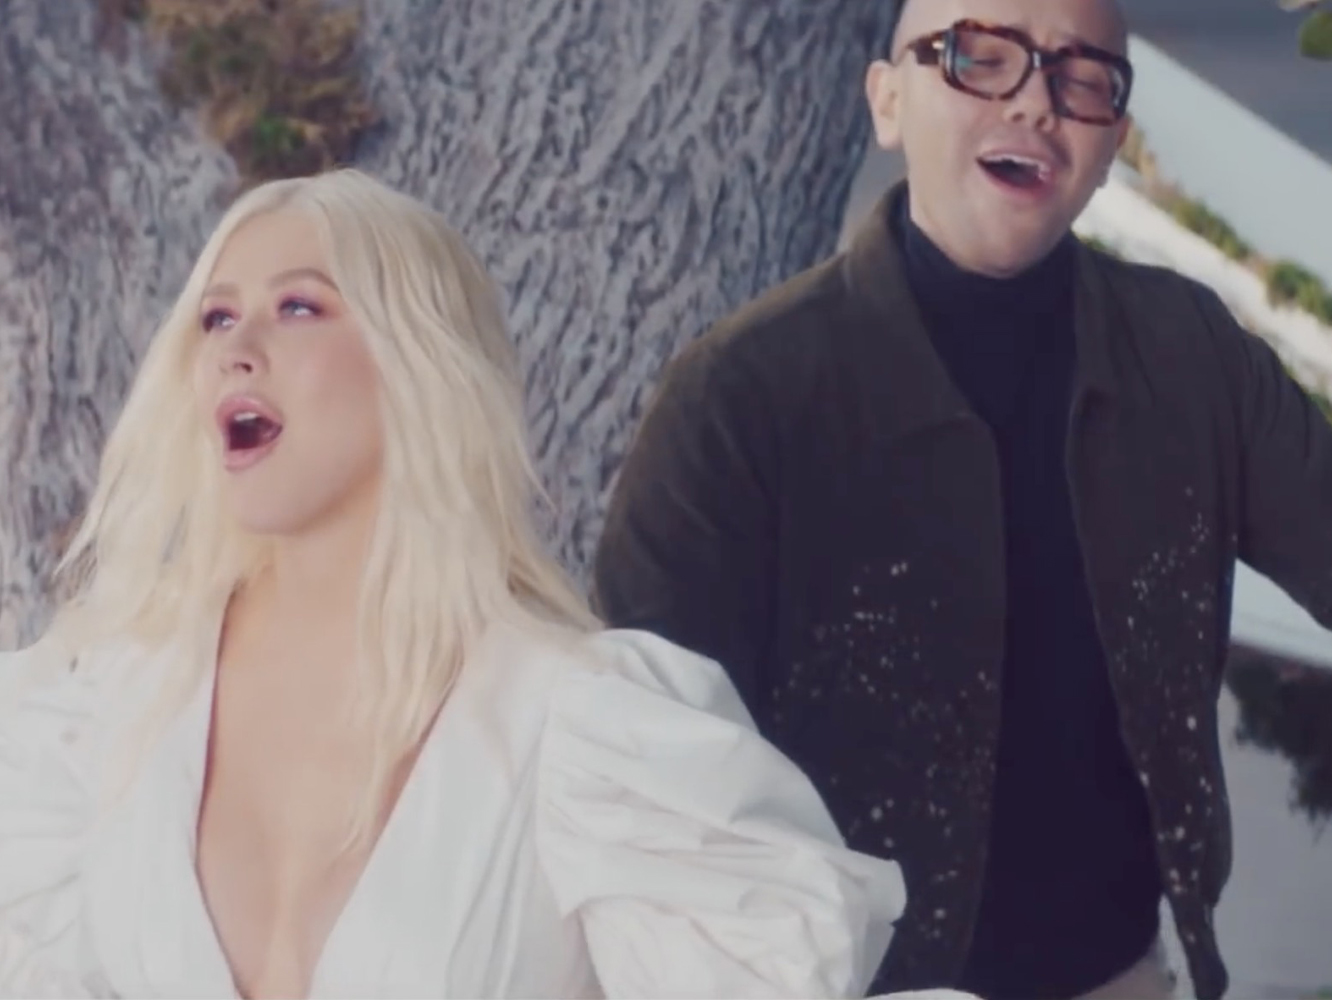  Xtinta Aguilera y el Moby de la gente pobre lanzan el floral vídeo para ‘Fall On Me’